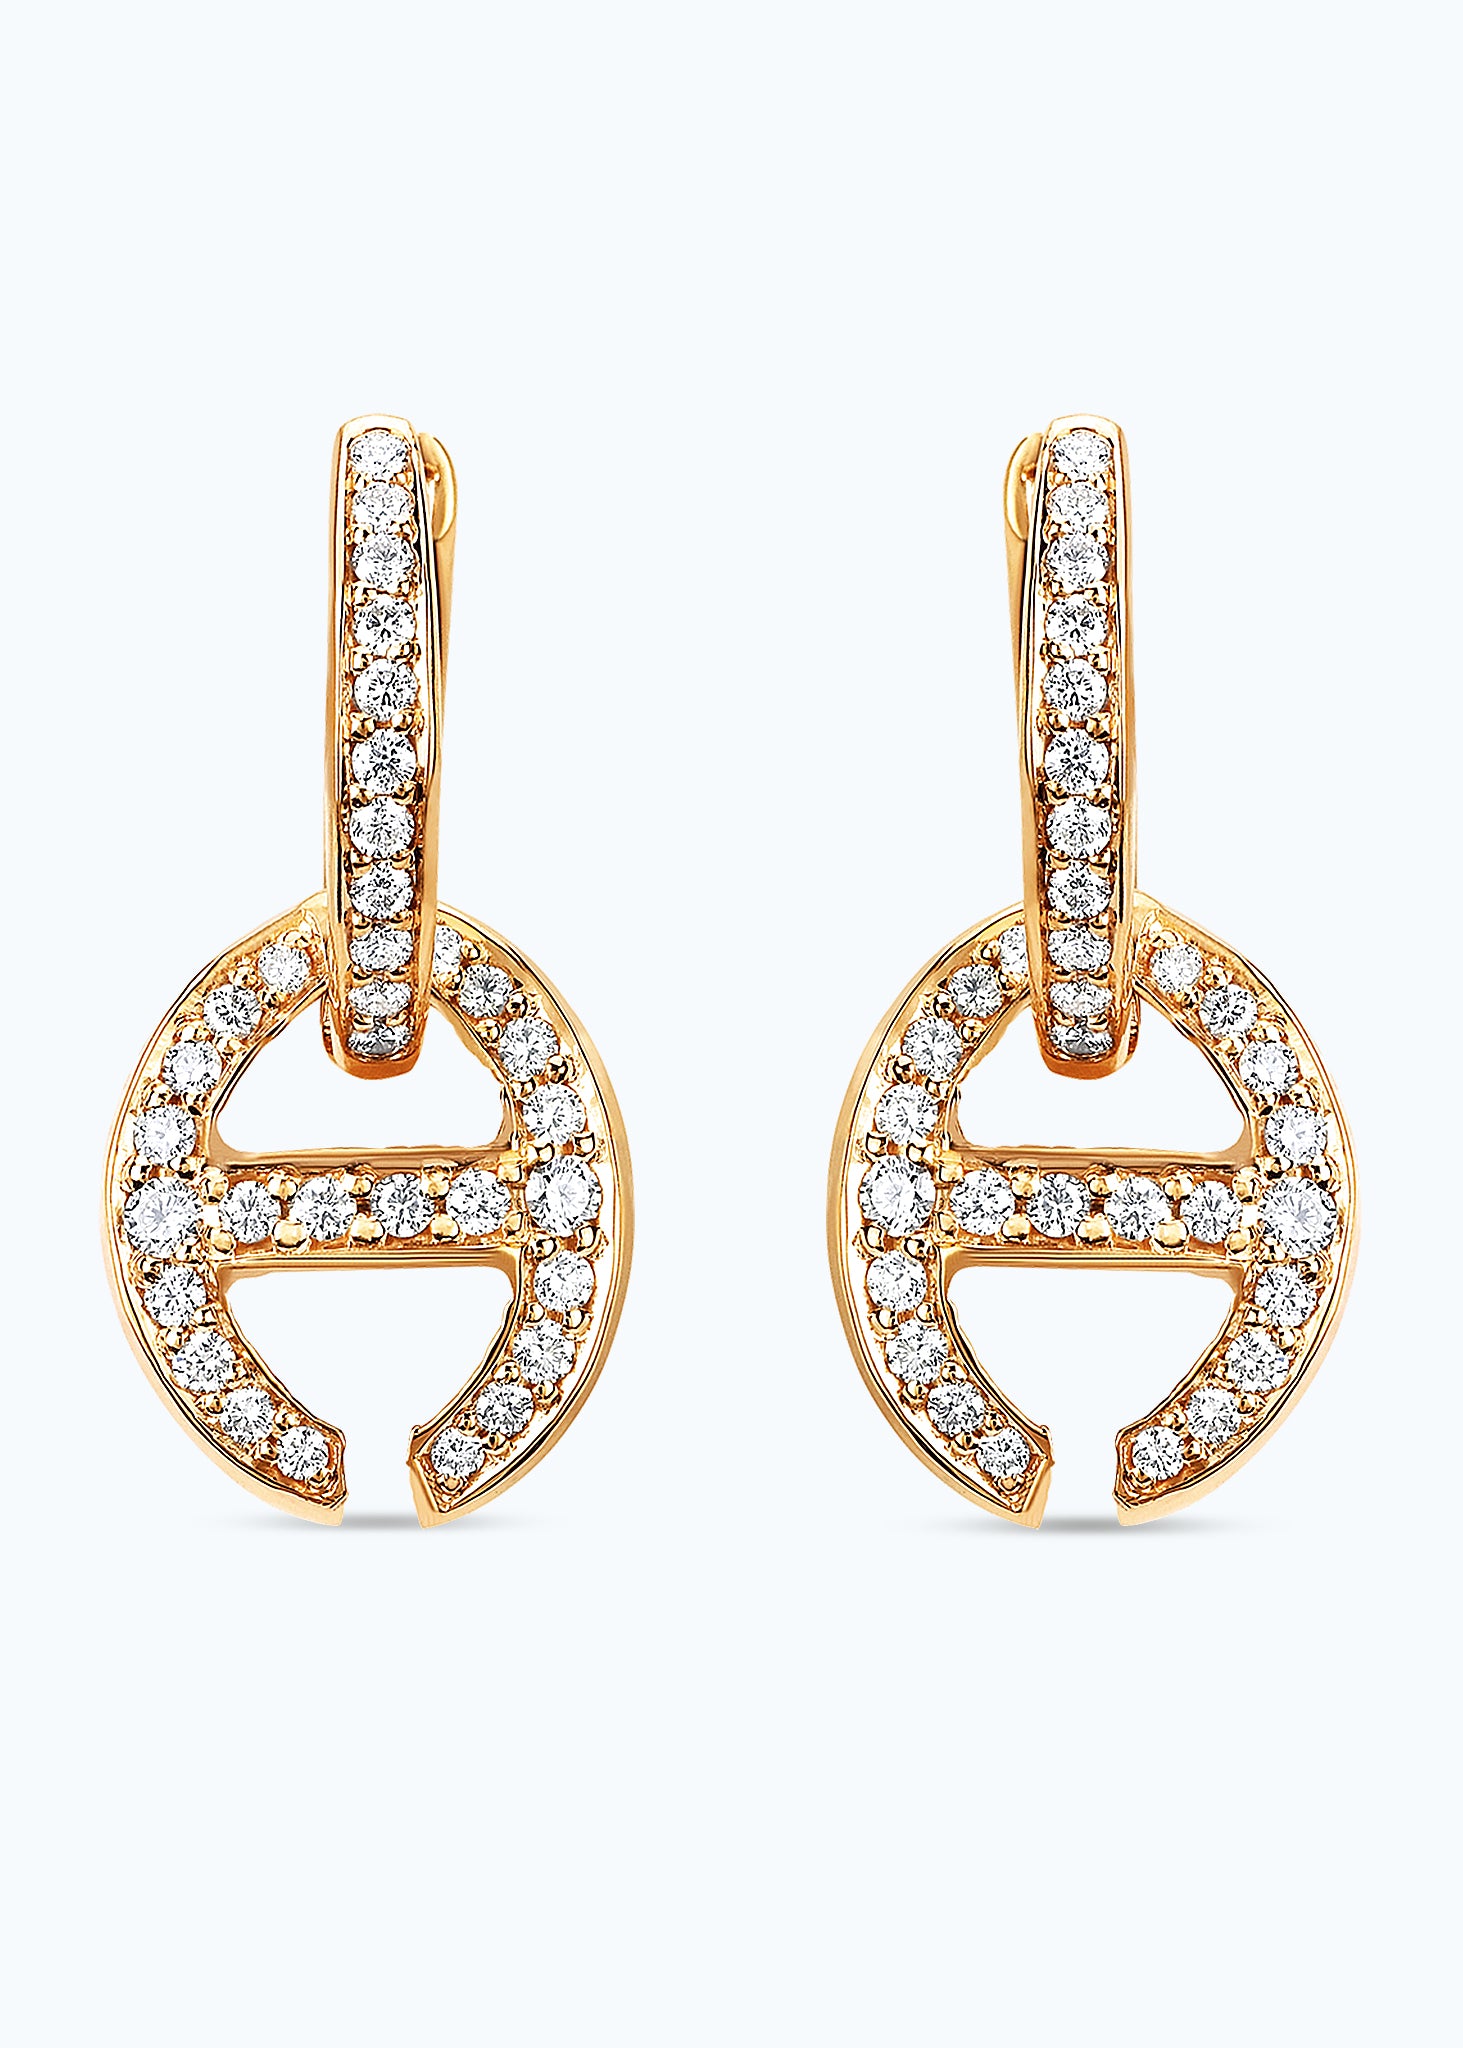 18k Yellow Gold Klaasp Earrings with Diamonds